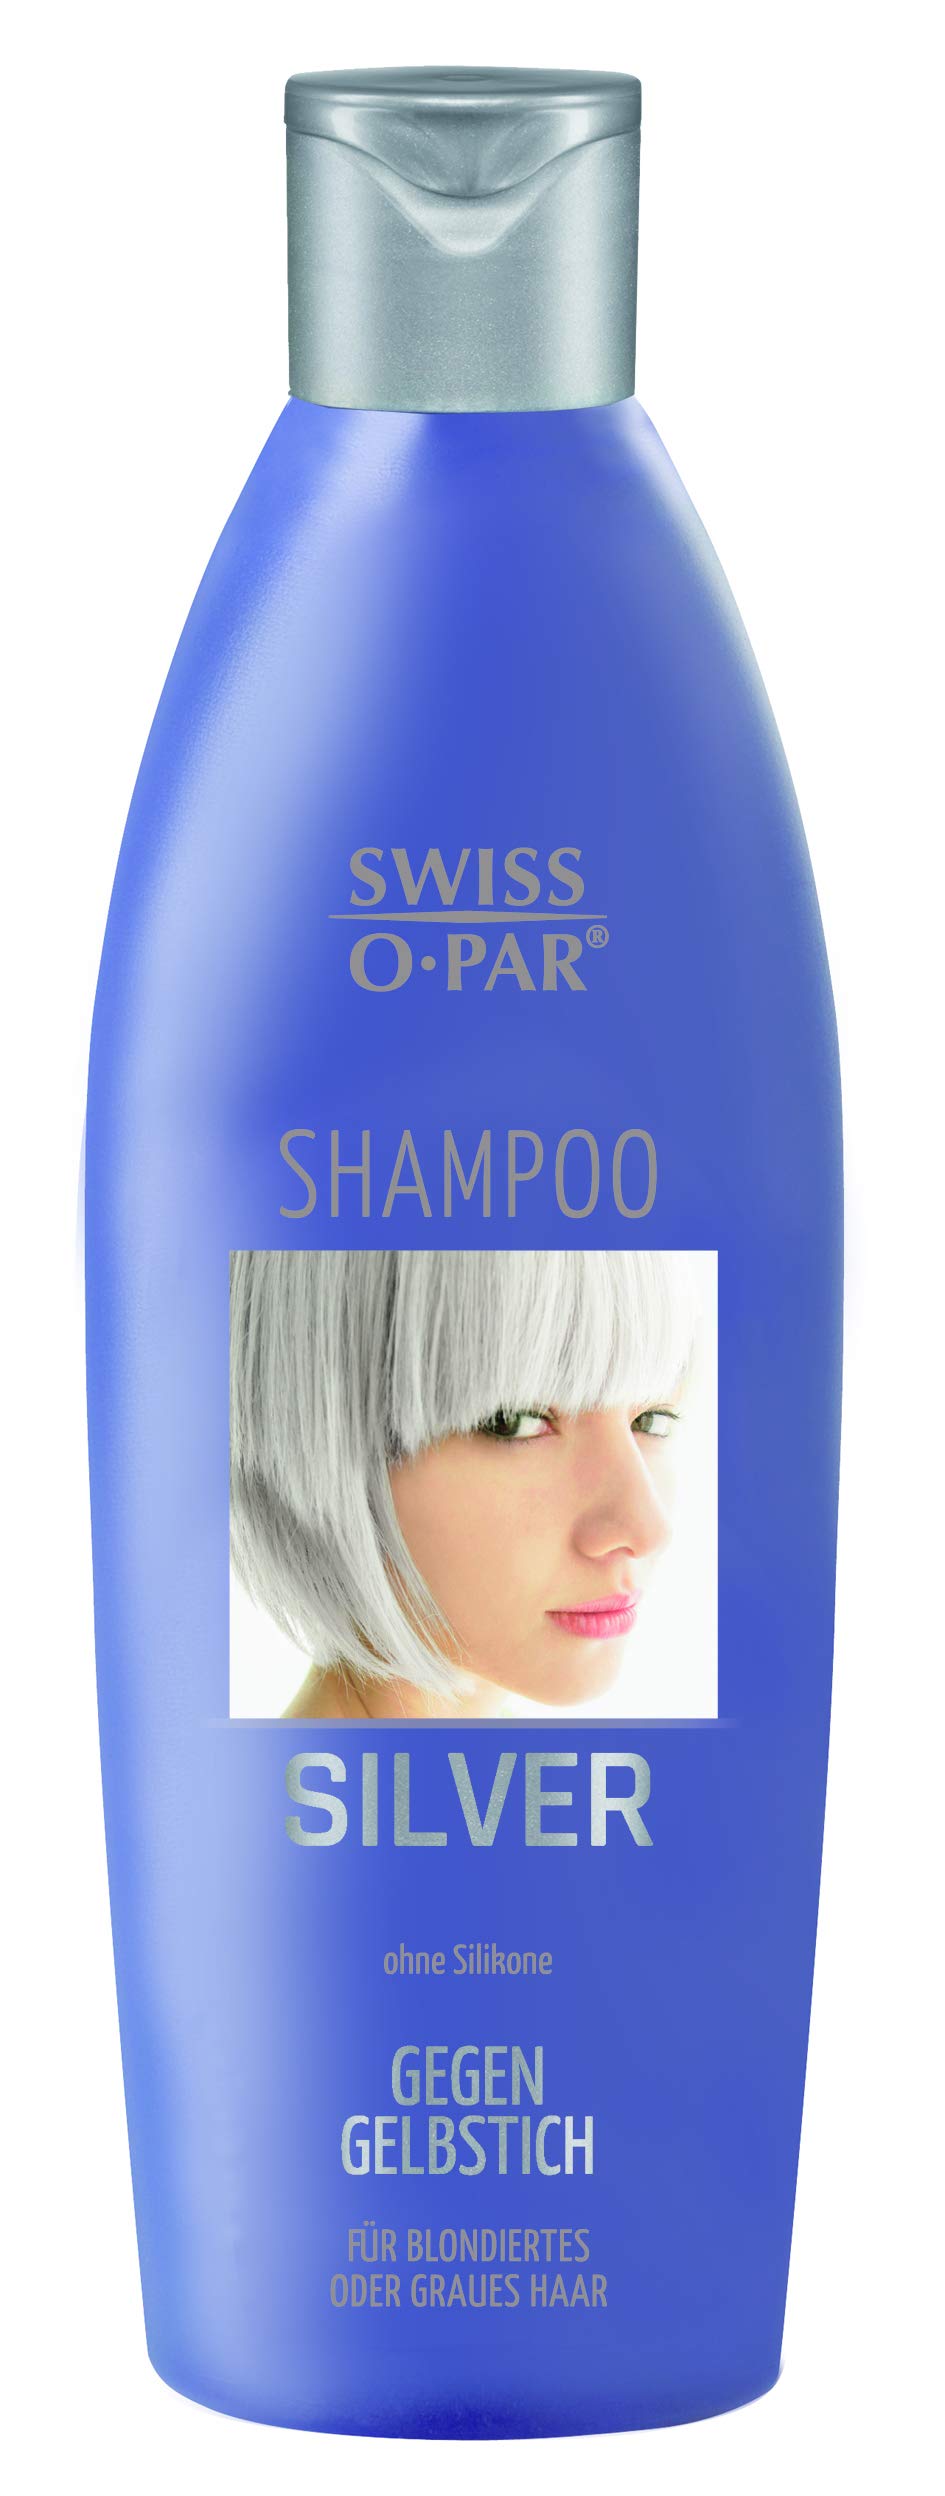 swiss silver szampon opinie